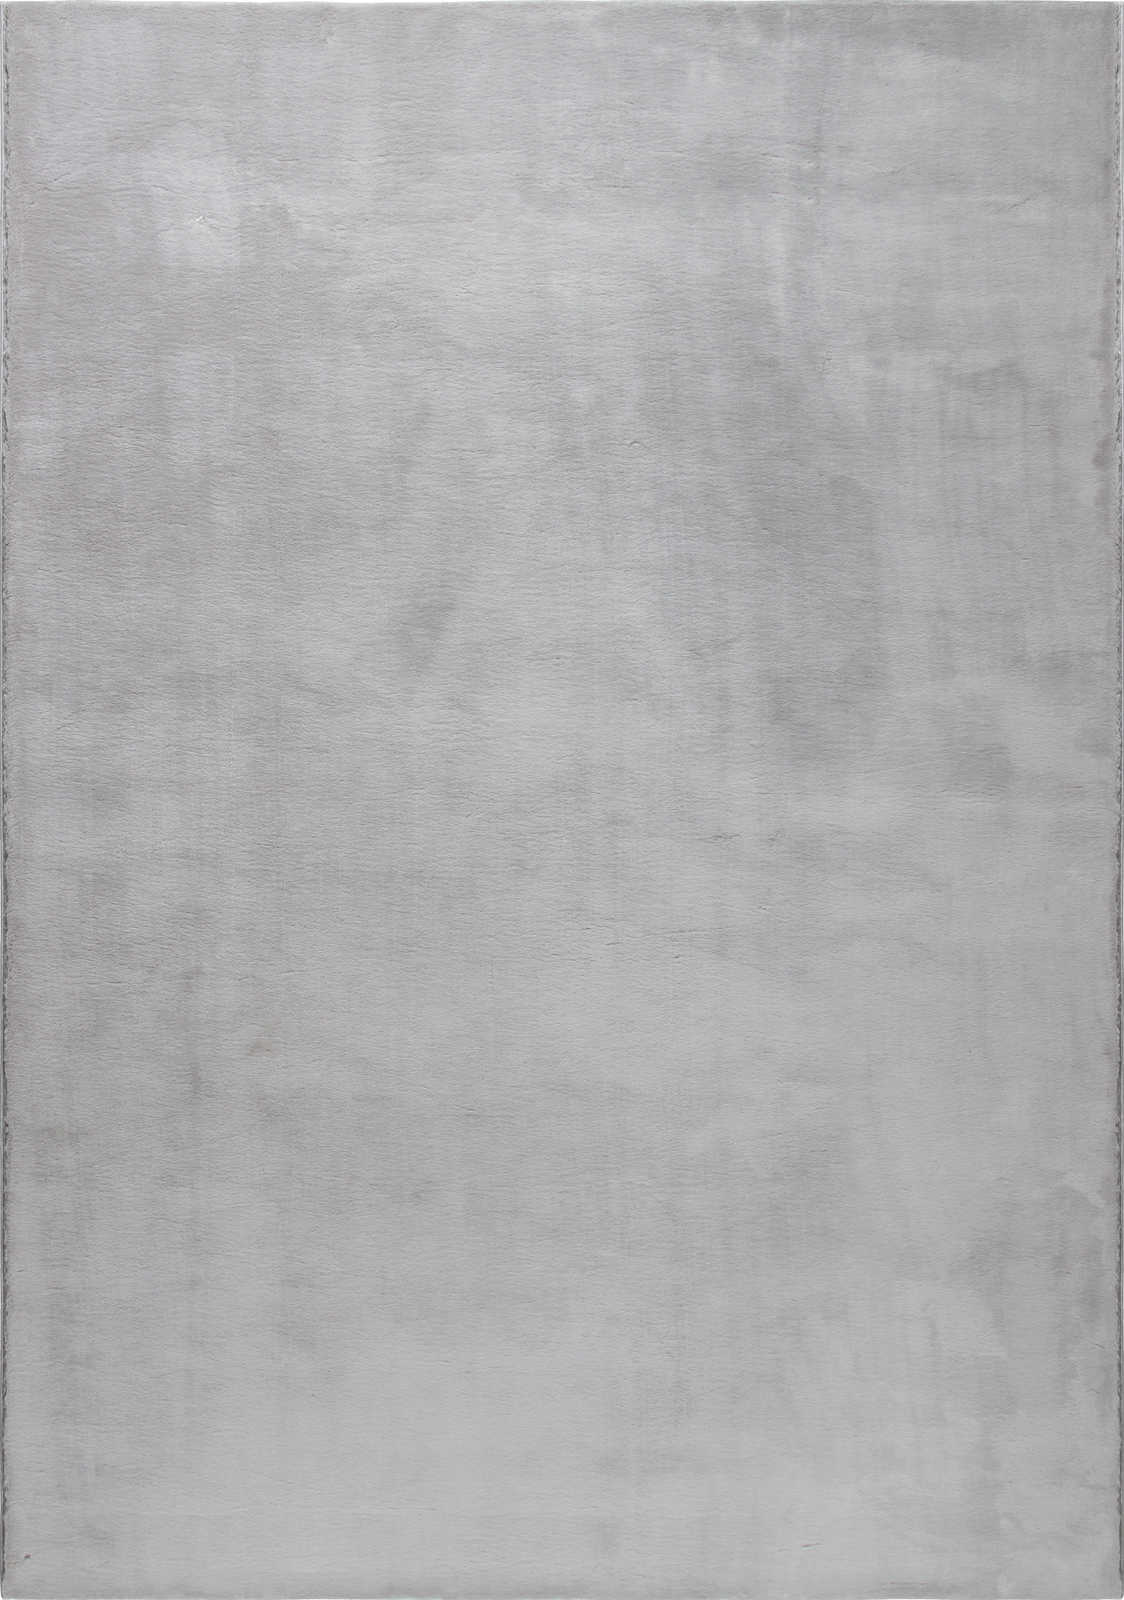             Knus hoogpolig tapijt in zachtgrijs - 110 x 60 cm
        